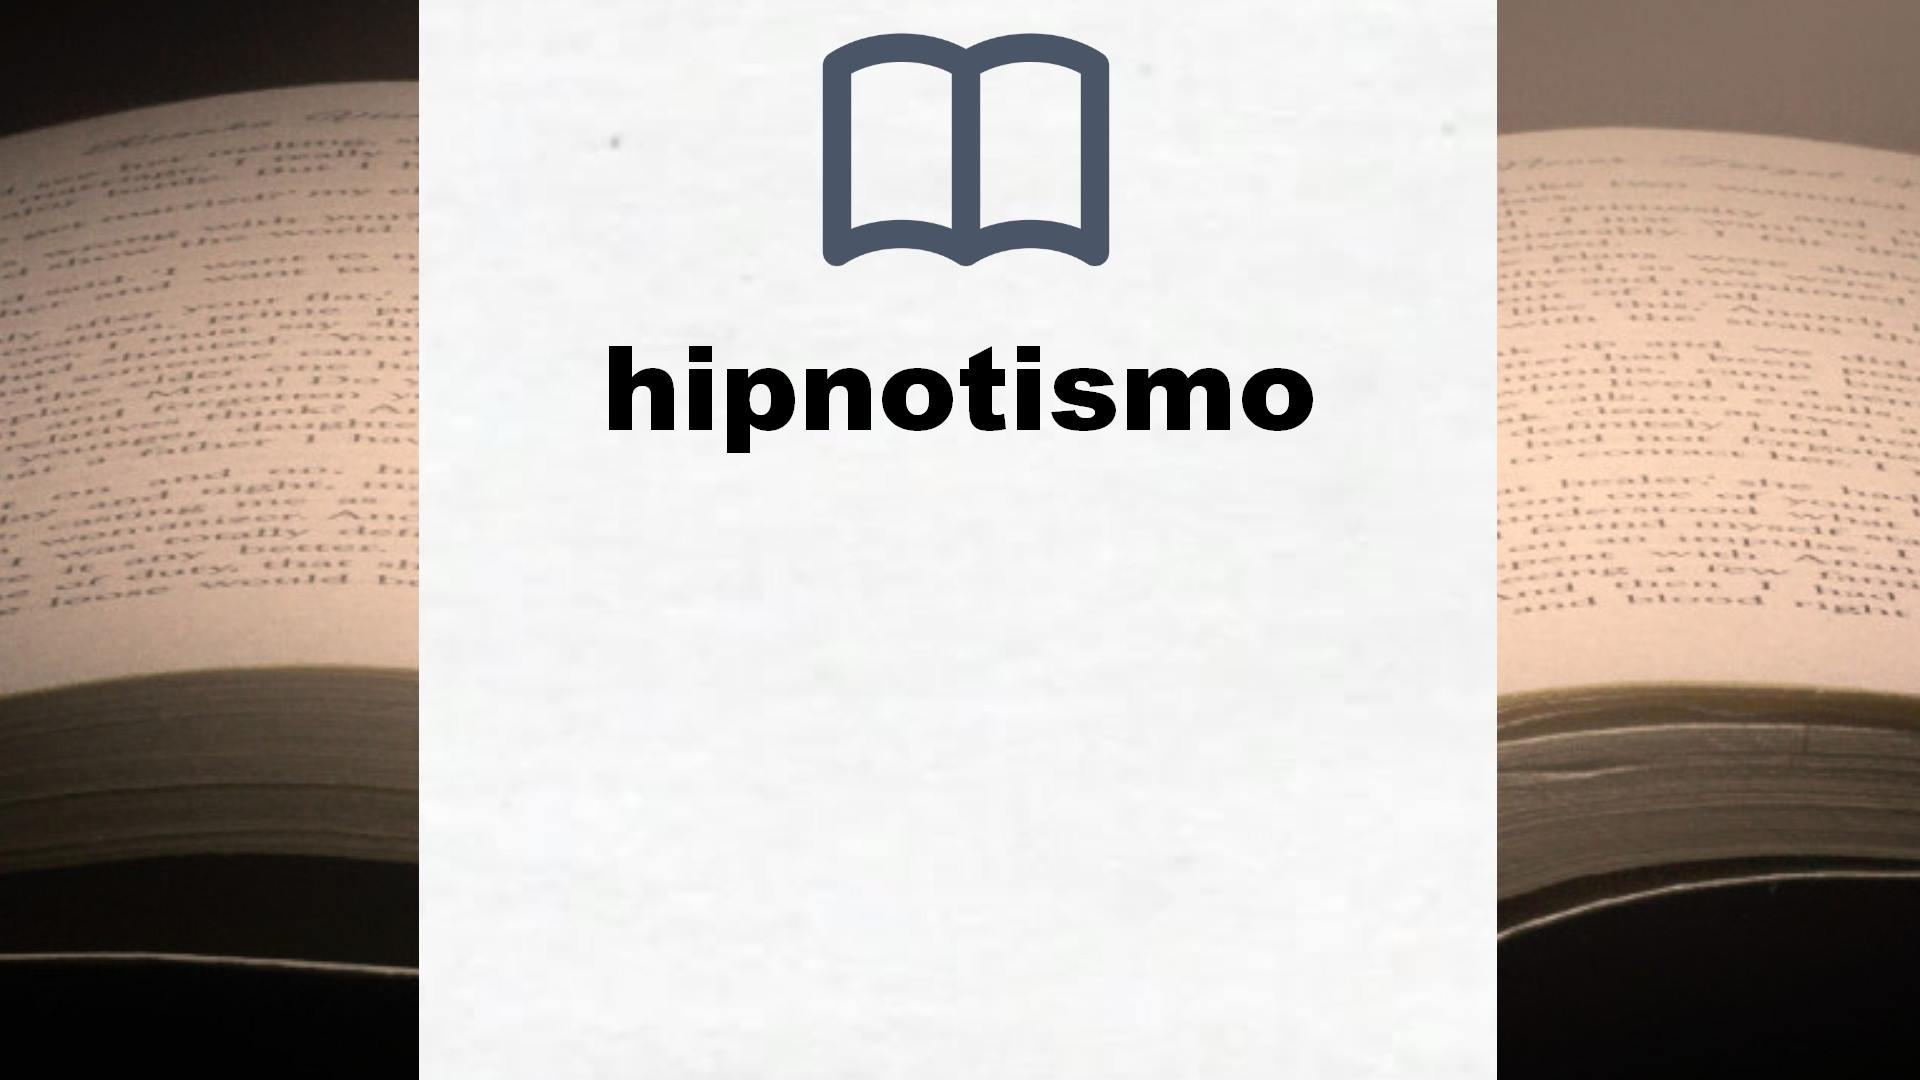 Libros sobre hipnotismo